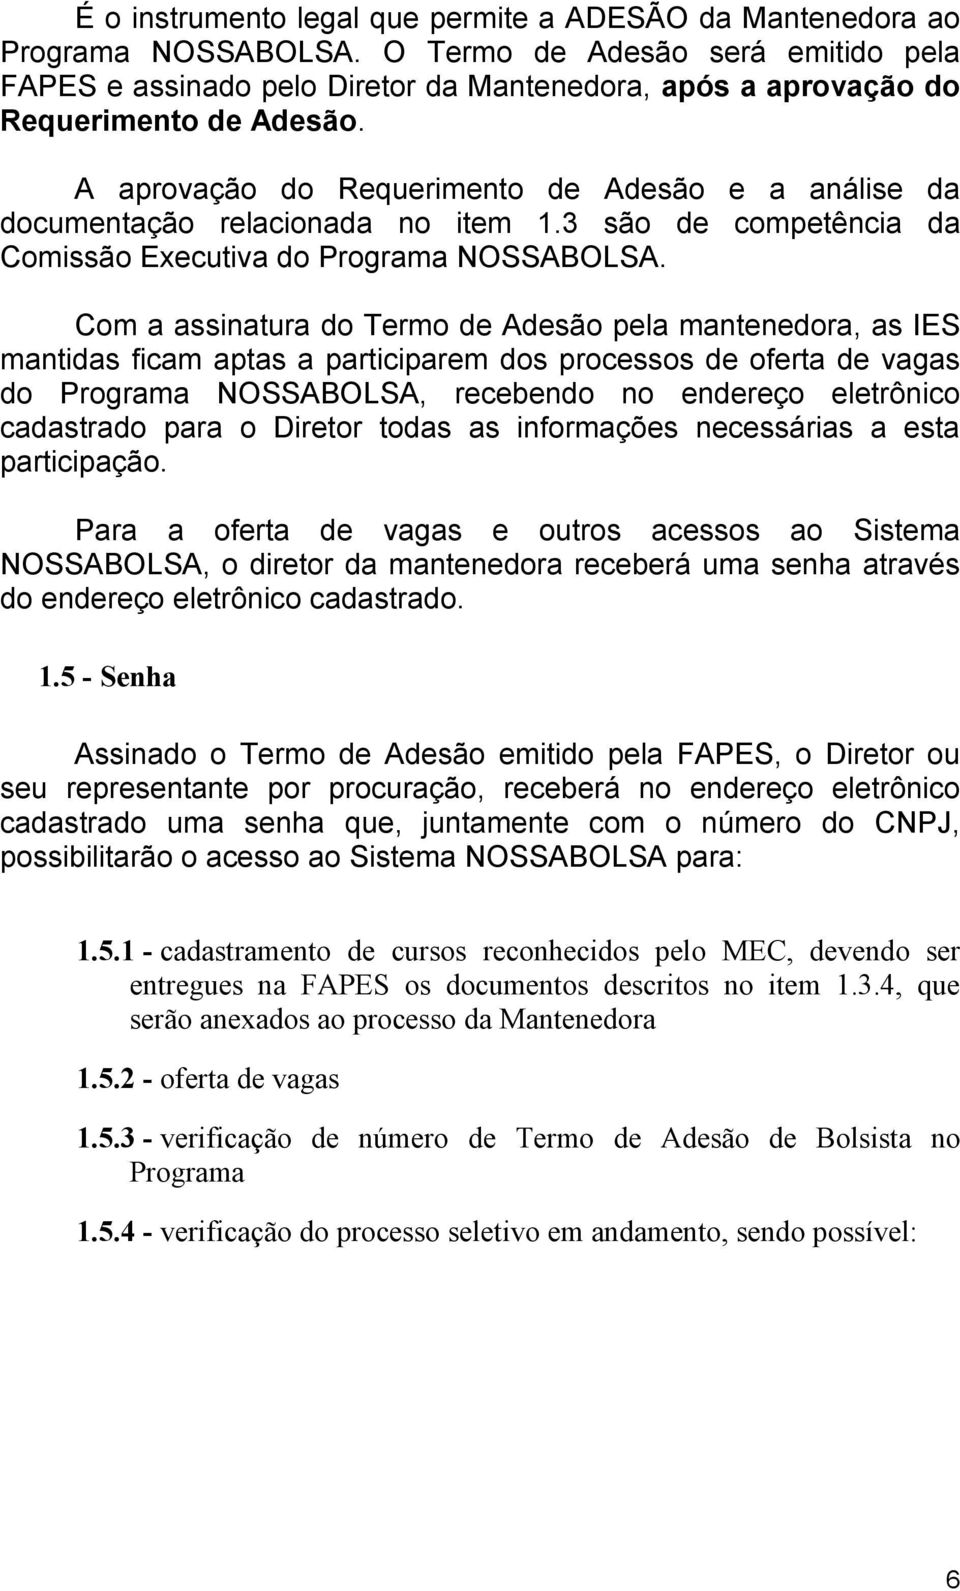 A aprovação do Requerimento de Adesão e a análise da documentação relacionada no item 1.3 são de competência da Comissão Executiva do Programa NOSSABOLSA.